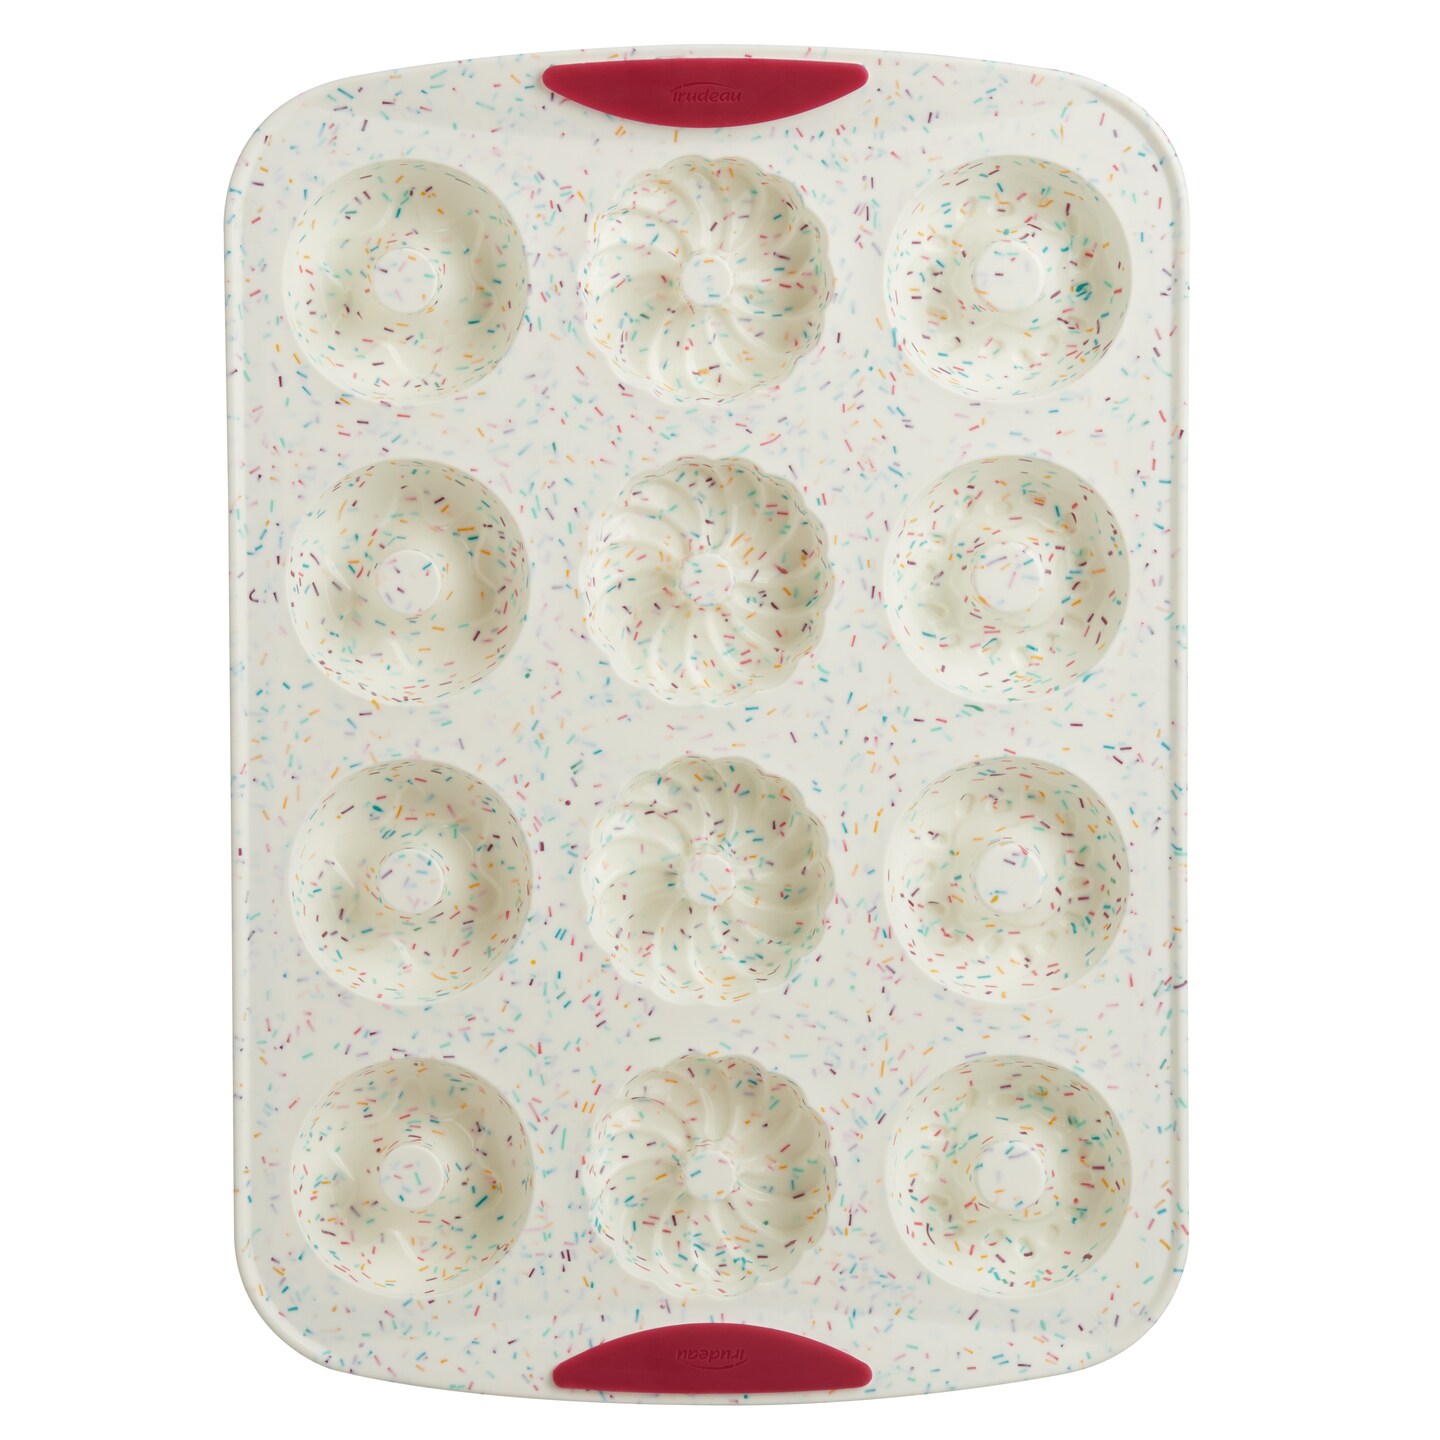 Trudeau Decorated Donut Pan-White Confetti/Fuchsia, 12 Cavity